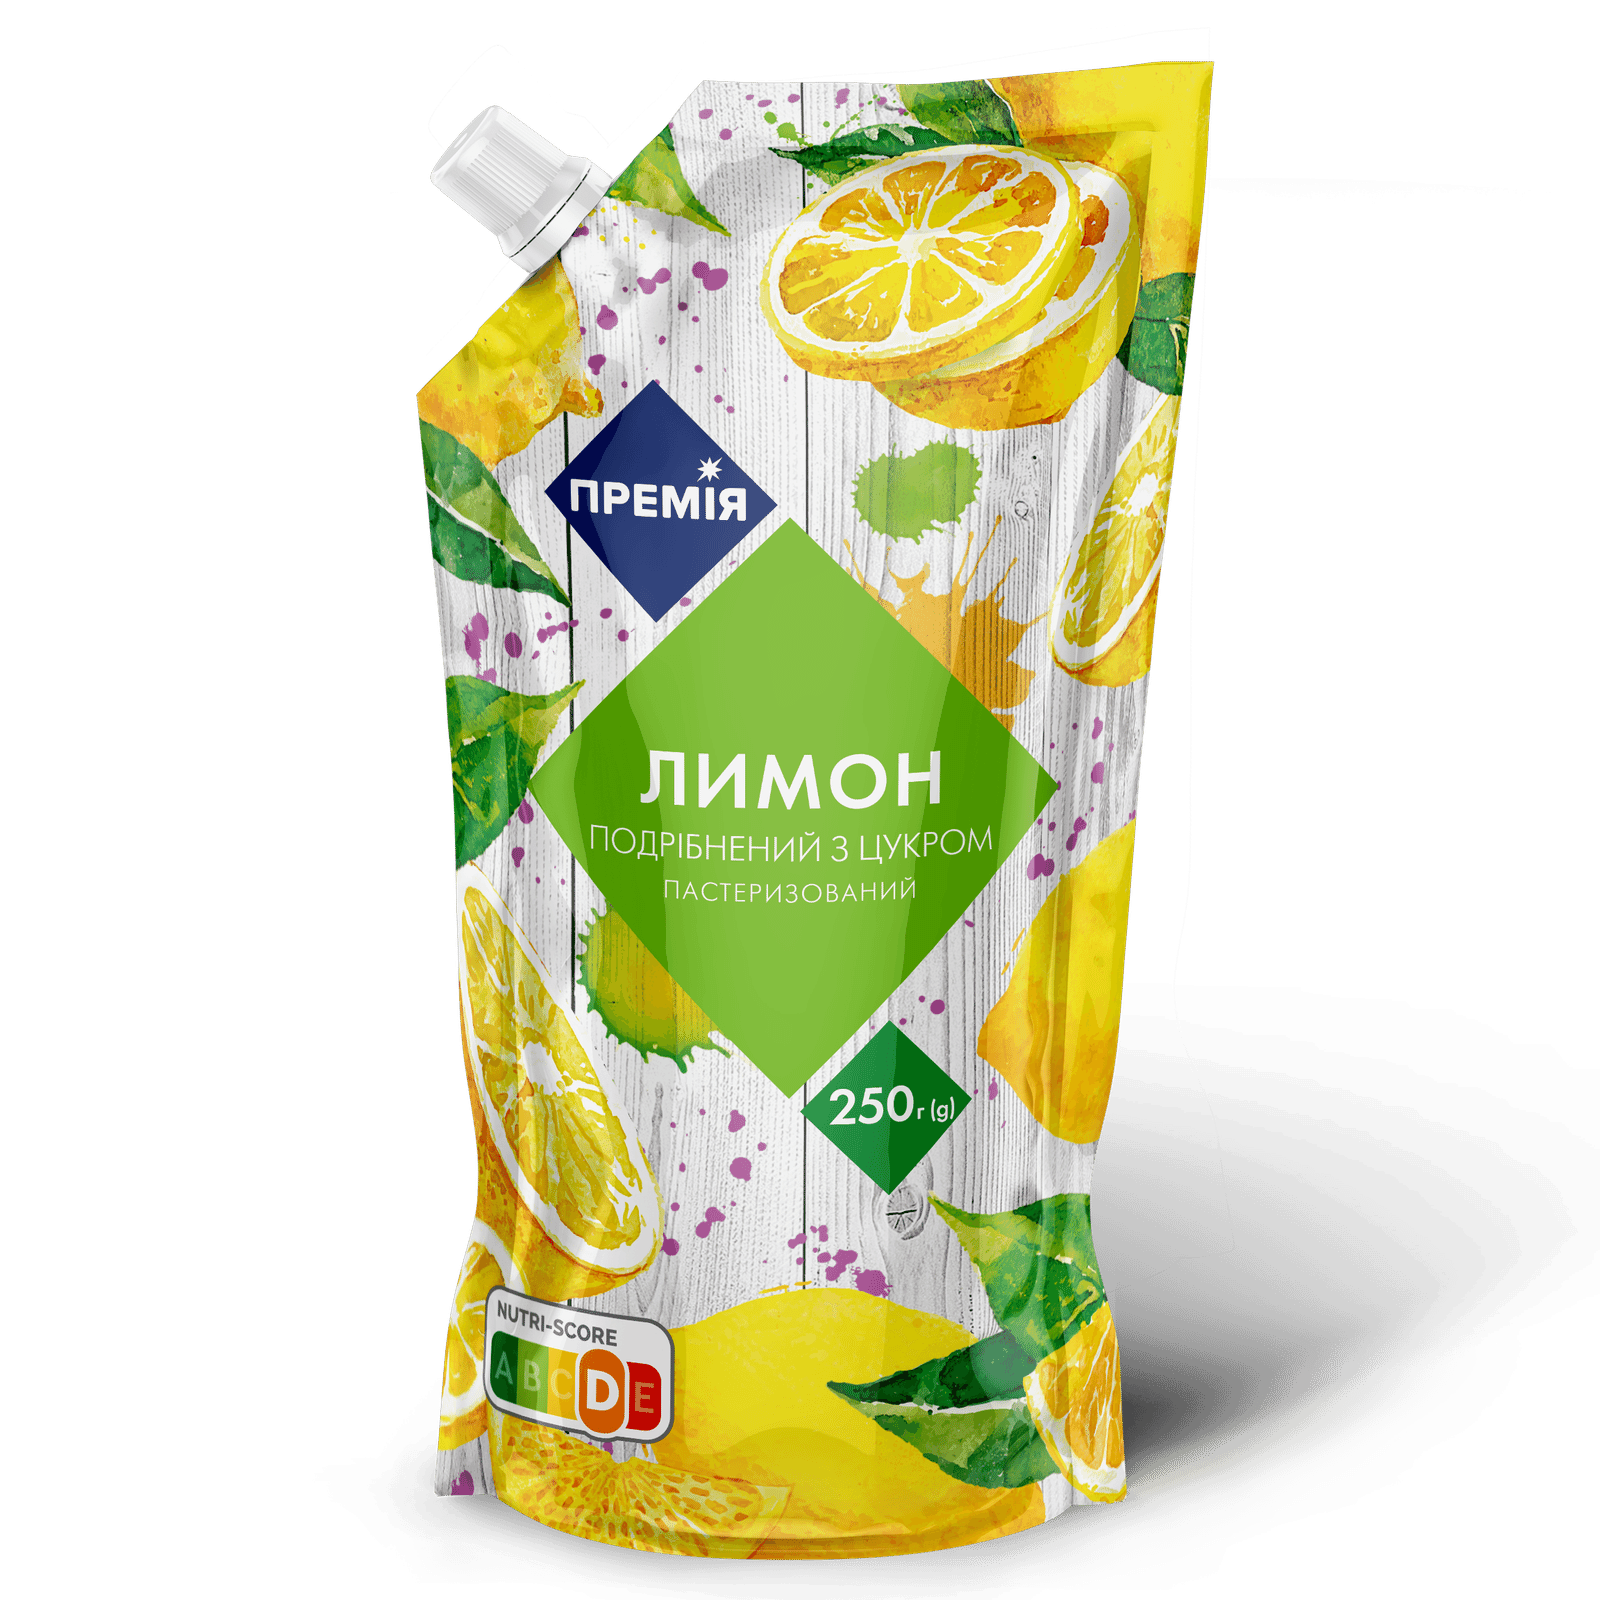 Лимон подрібнений з цукром «Премія»® пастеризований - 1